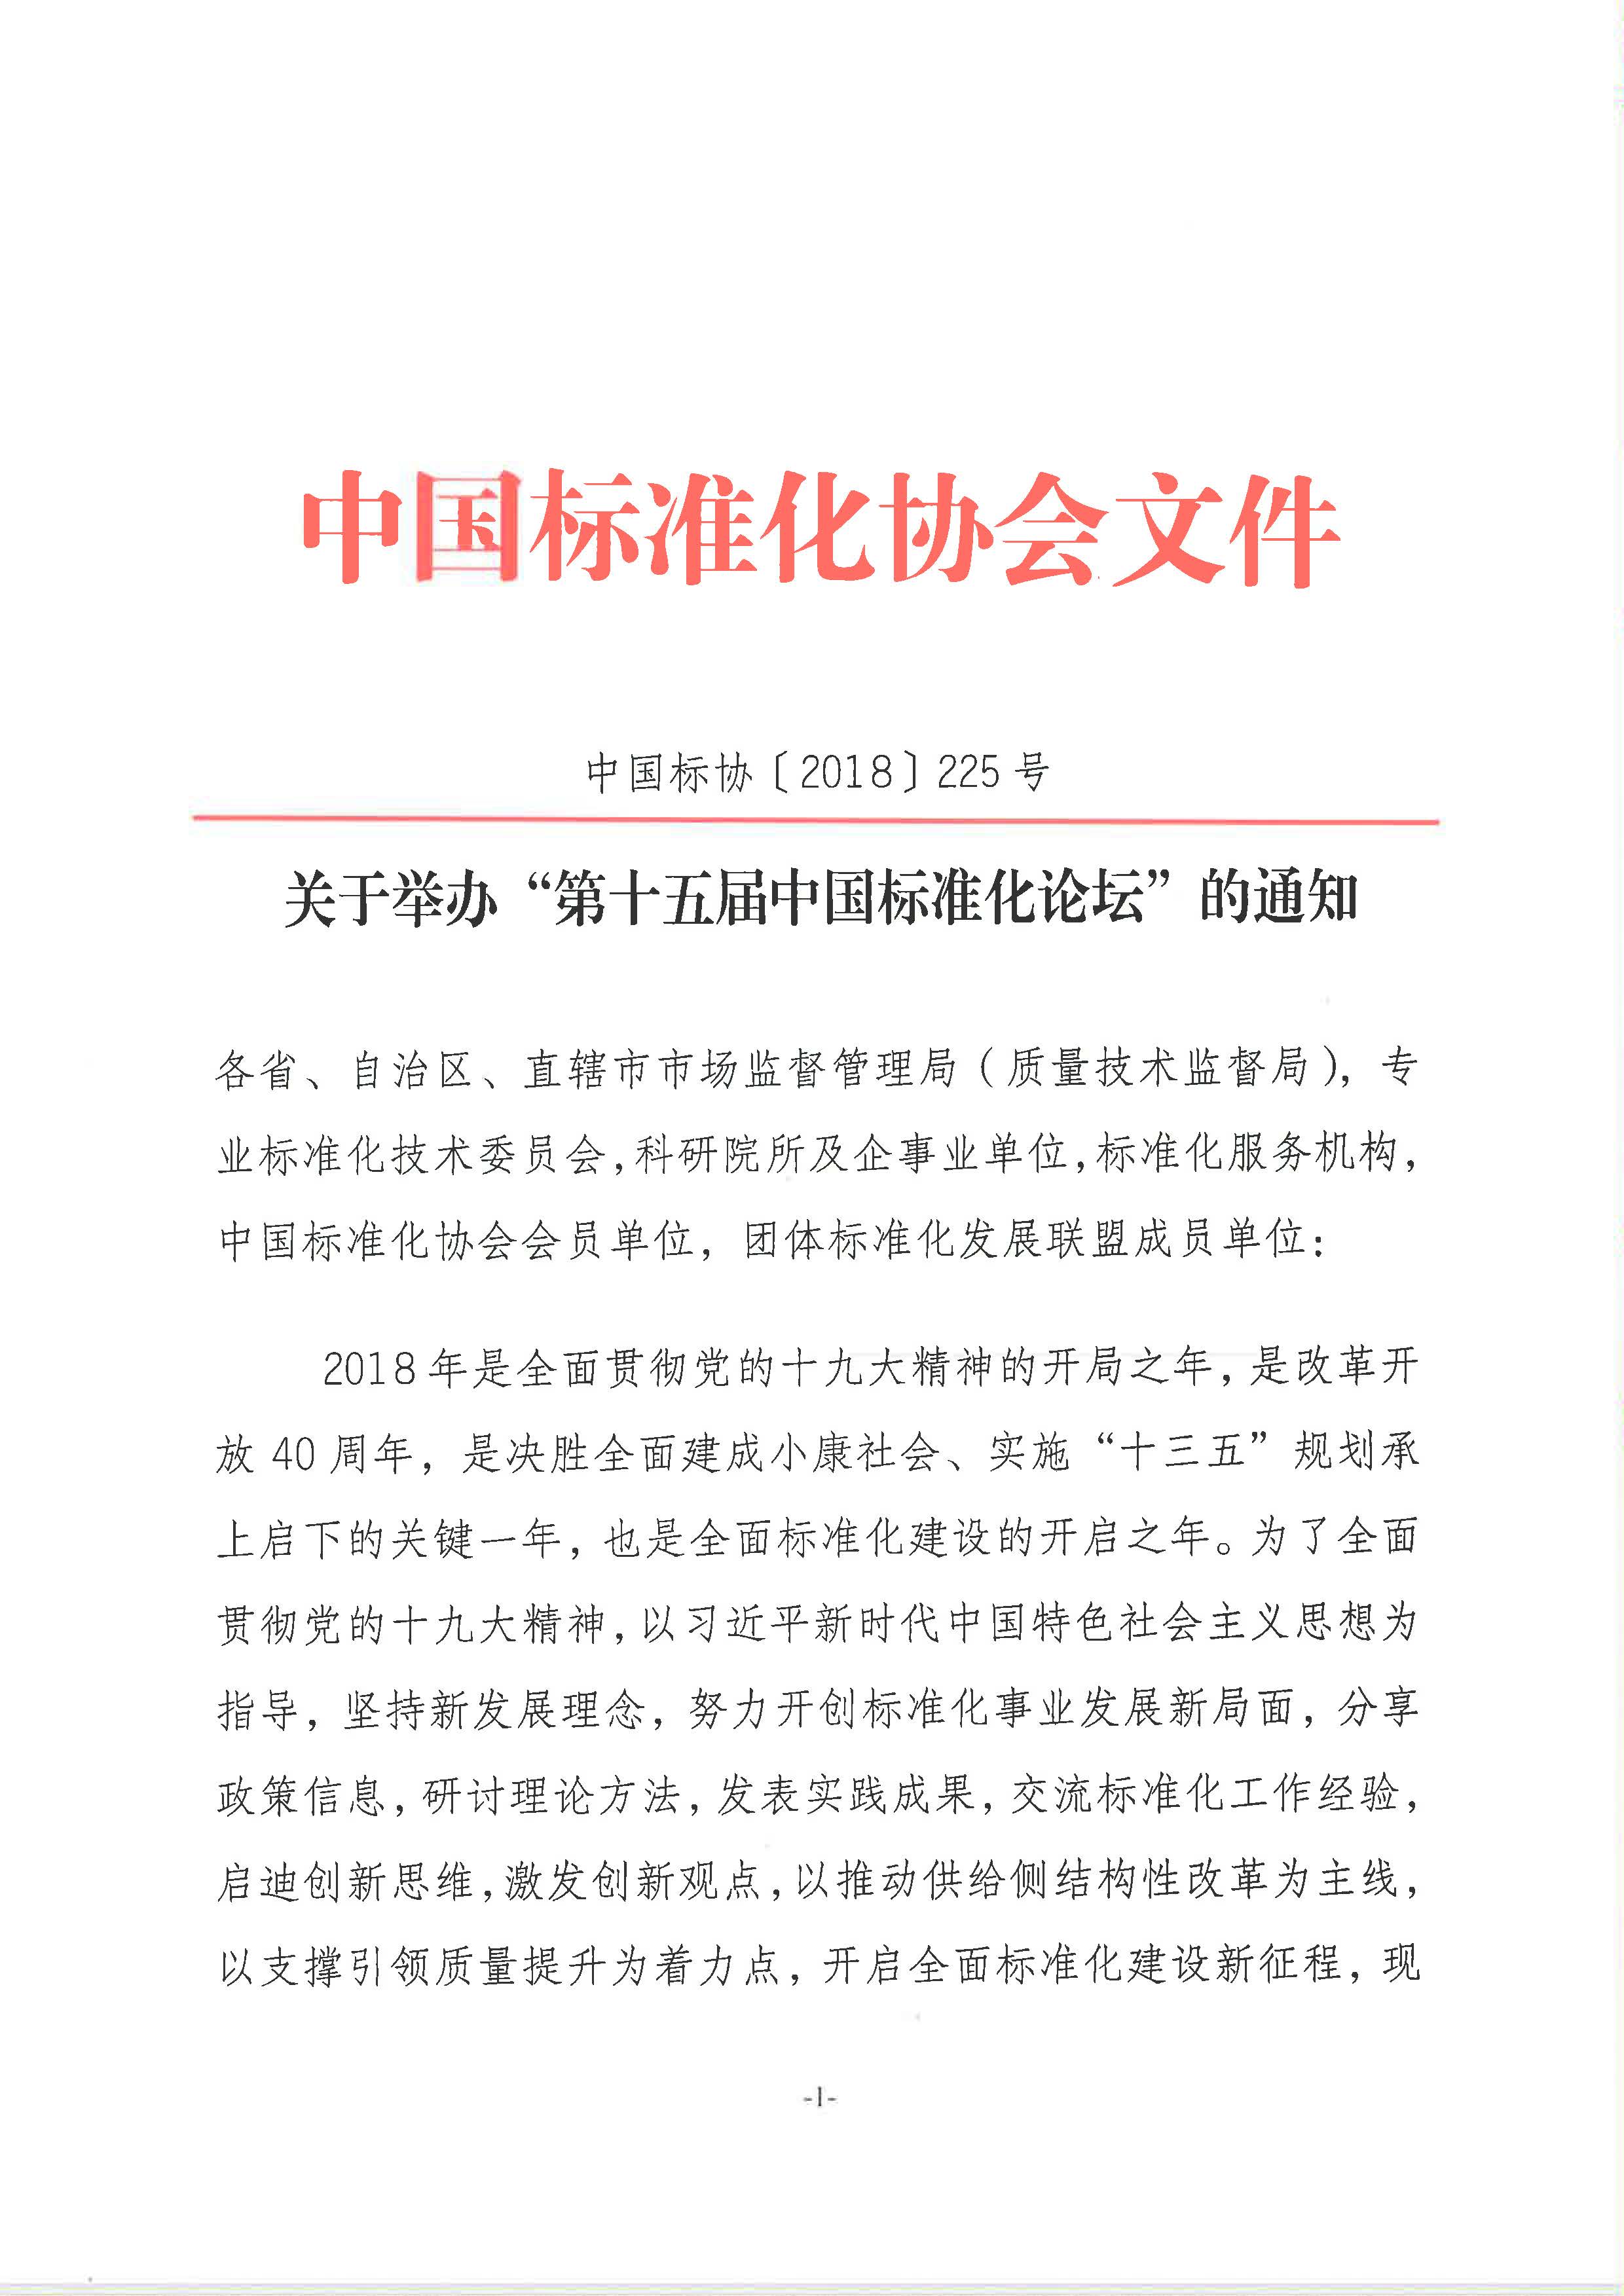 附件1：关于举办“第十五届中国标准化论坛”的通知2018-225_页面_1.jpg